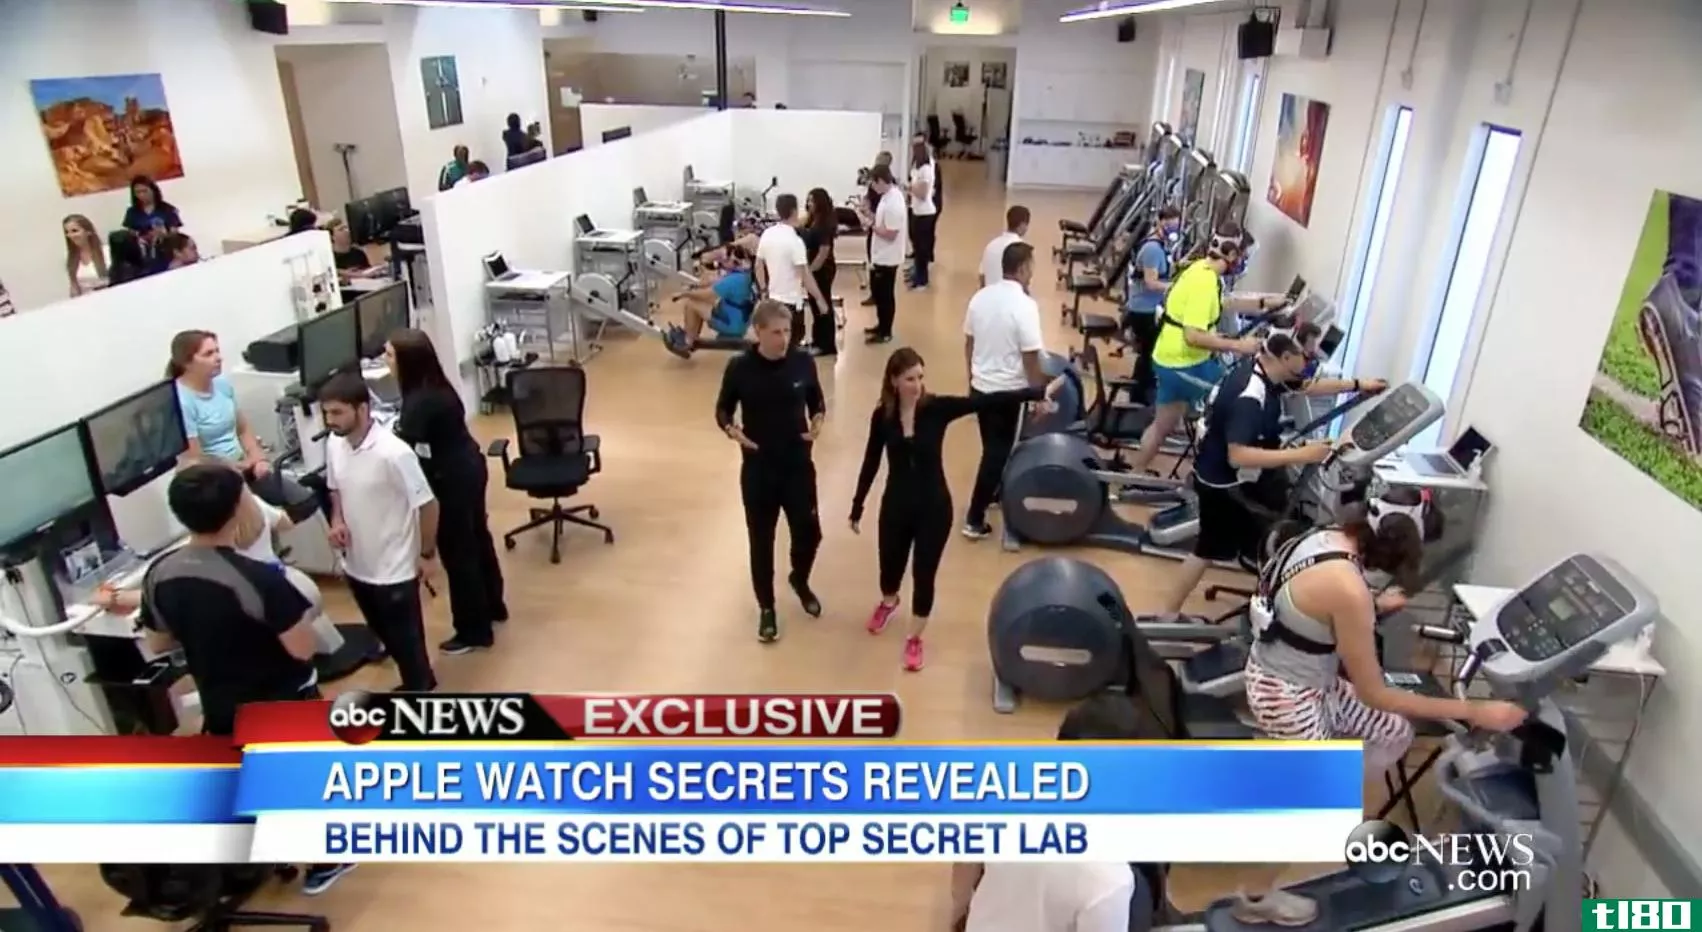 这是苹果公司一直在学习个人健身知识的秘密实验室